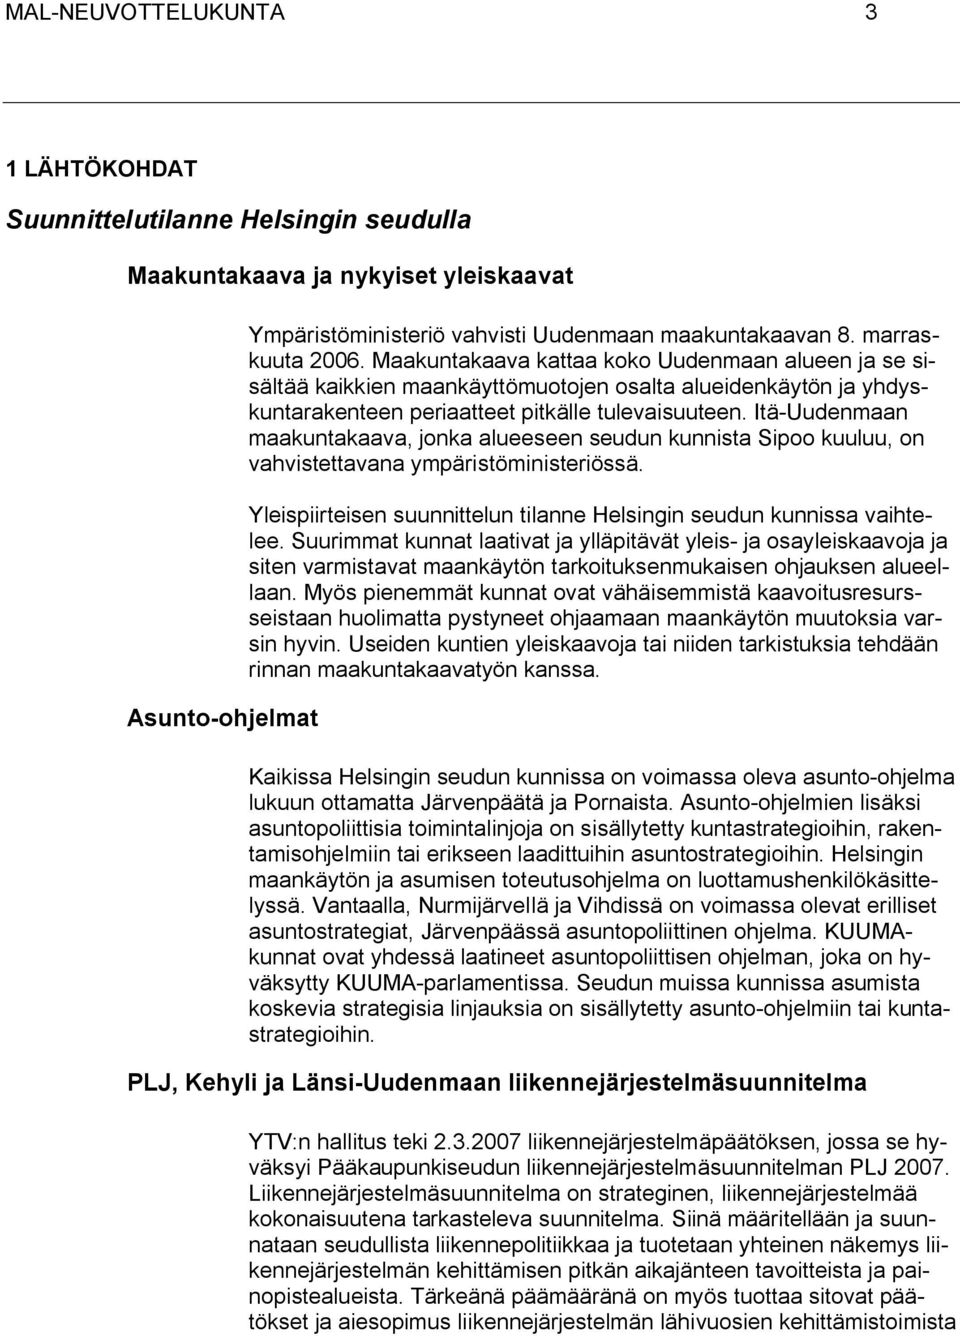 Itä-Uudenmaan maakuntakaava, jonka alueeseen seudun kunnista Sipoo kuuluu, on vahvistettavana ympäristöministeriössä. Yleispiirteisen suunnittelun tilanne Helsingin seudun kunnissa vaihtelee.